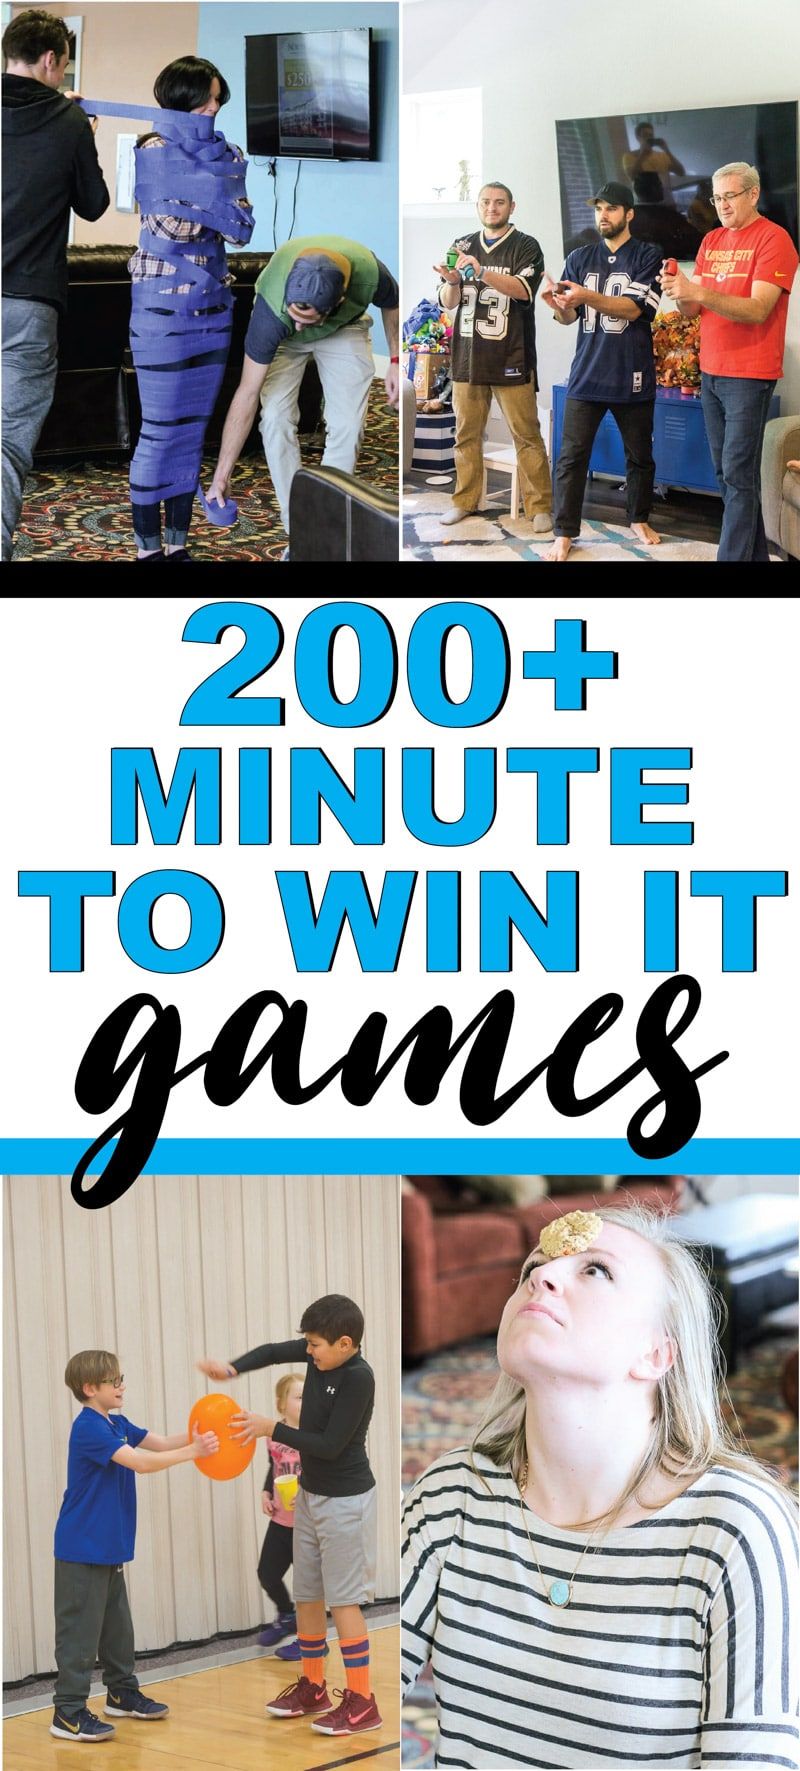 Najboljša minuta za zmago v igrah za otroke, najstnike ali celo za odrasle! Več kot 200+ zabavnih iger, ki so kot nalašč za srečanje družine, šolo, šolske zabave in še več! Preproste igre, zabavne timske igre in še veliko več!